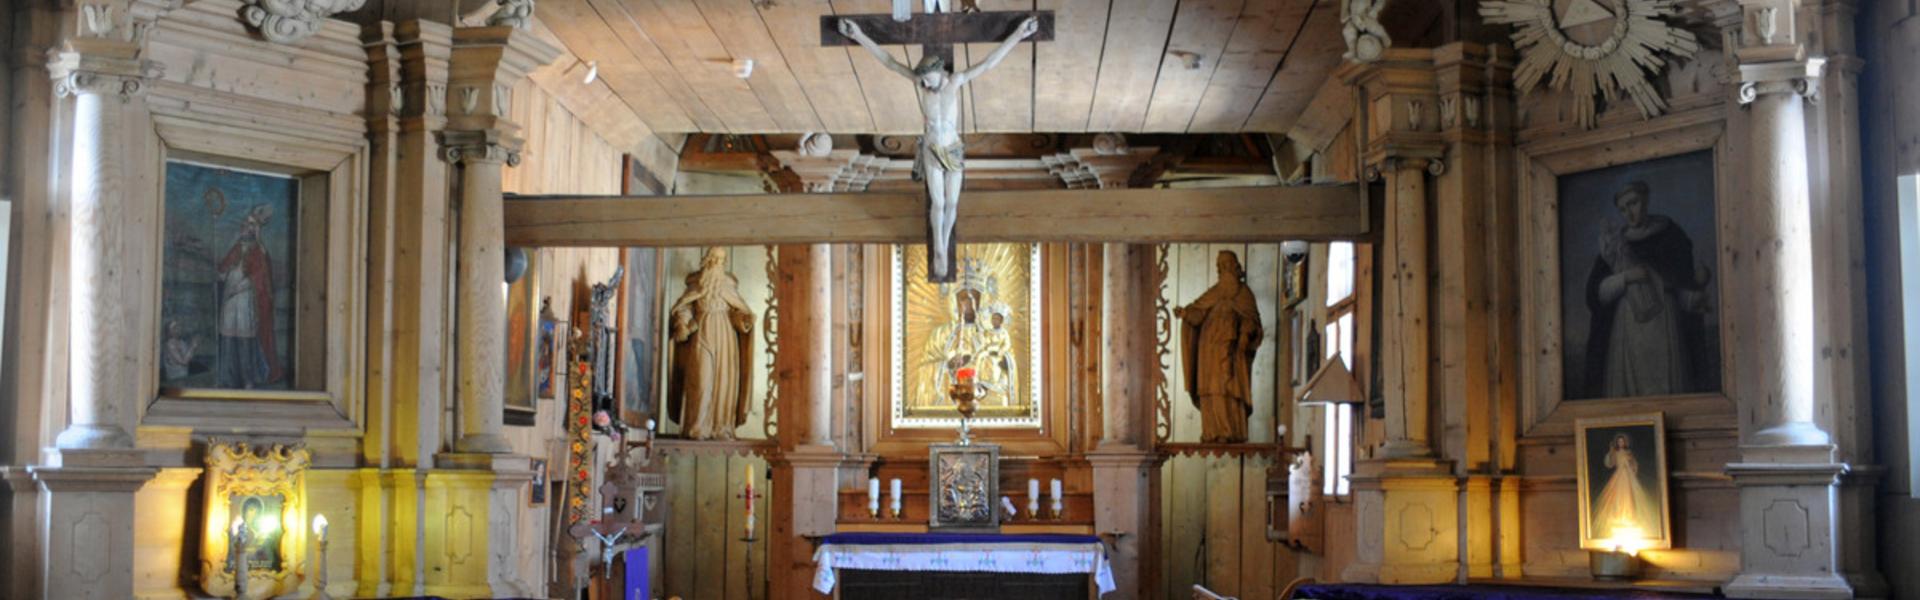 Ołtarze autorstwa Wawrzyńcoka, wnętrze drewnianego kościoła